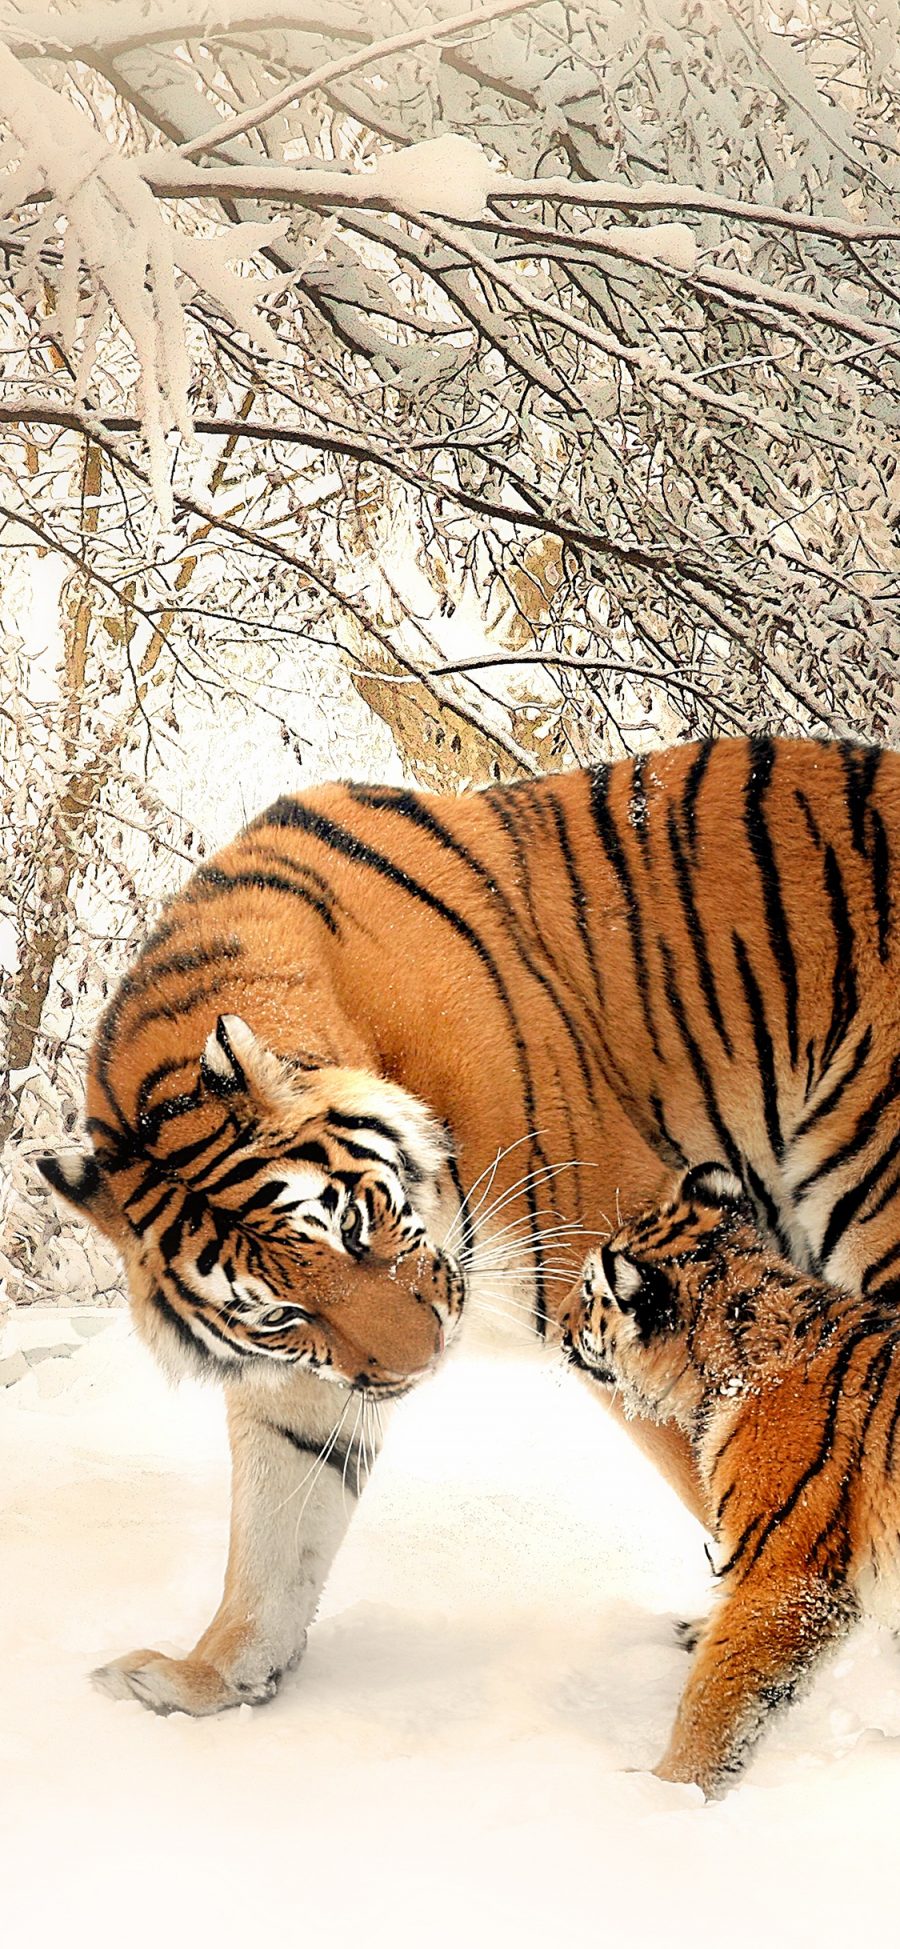 [2436×1125]老虎 凶猛 猛兽 雪地 苹果手机壁纸图片